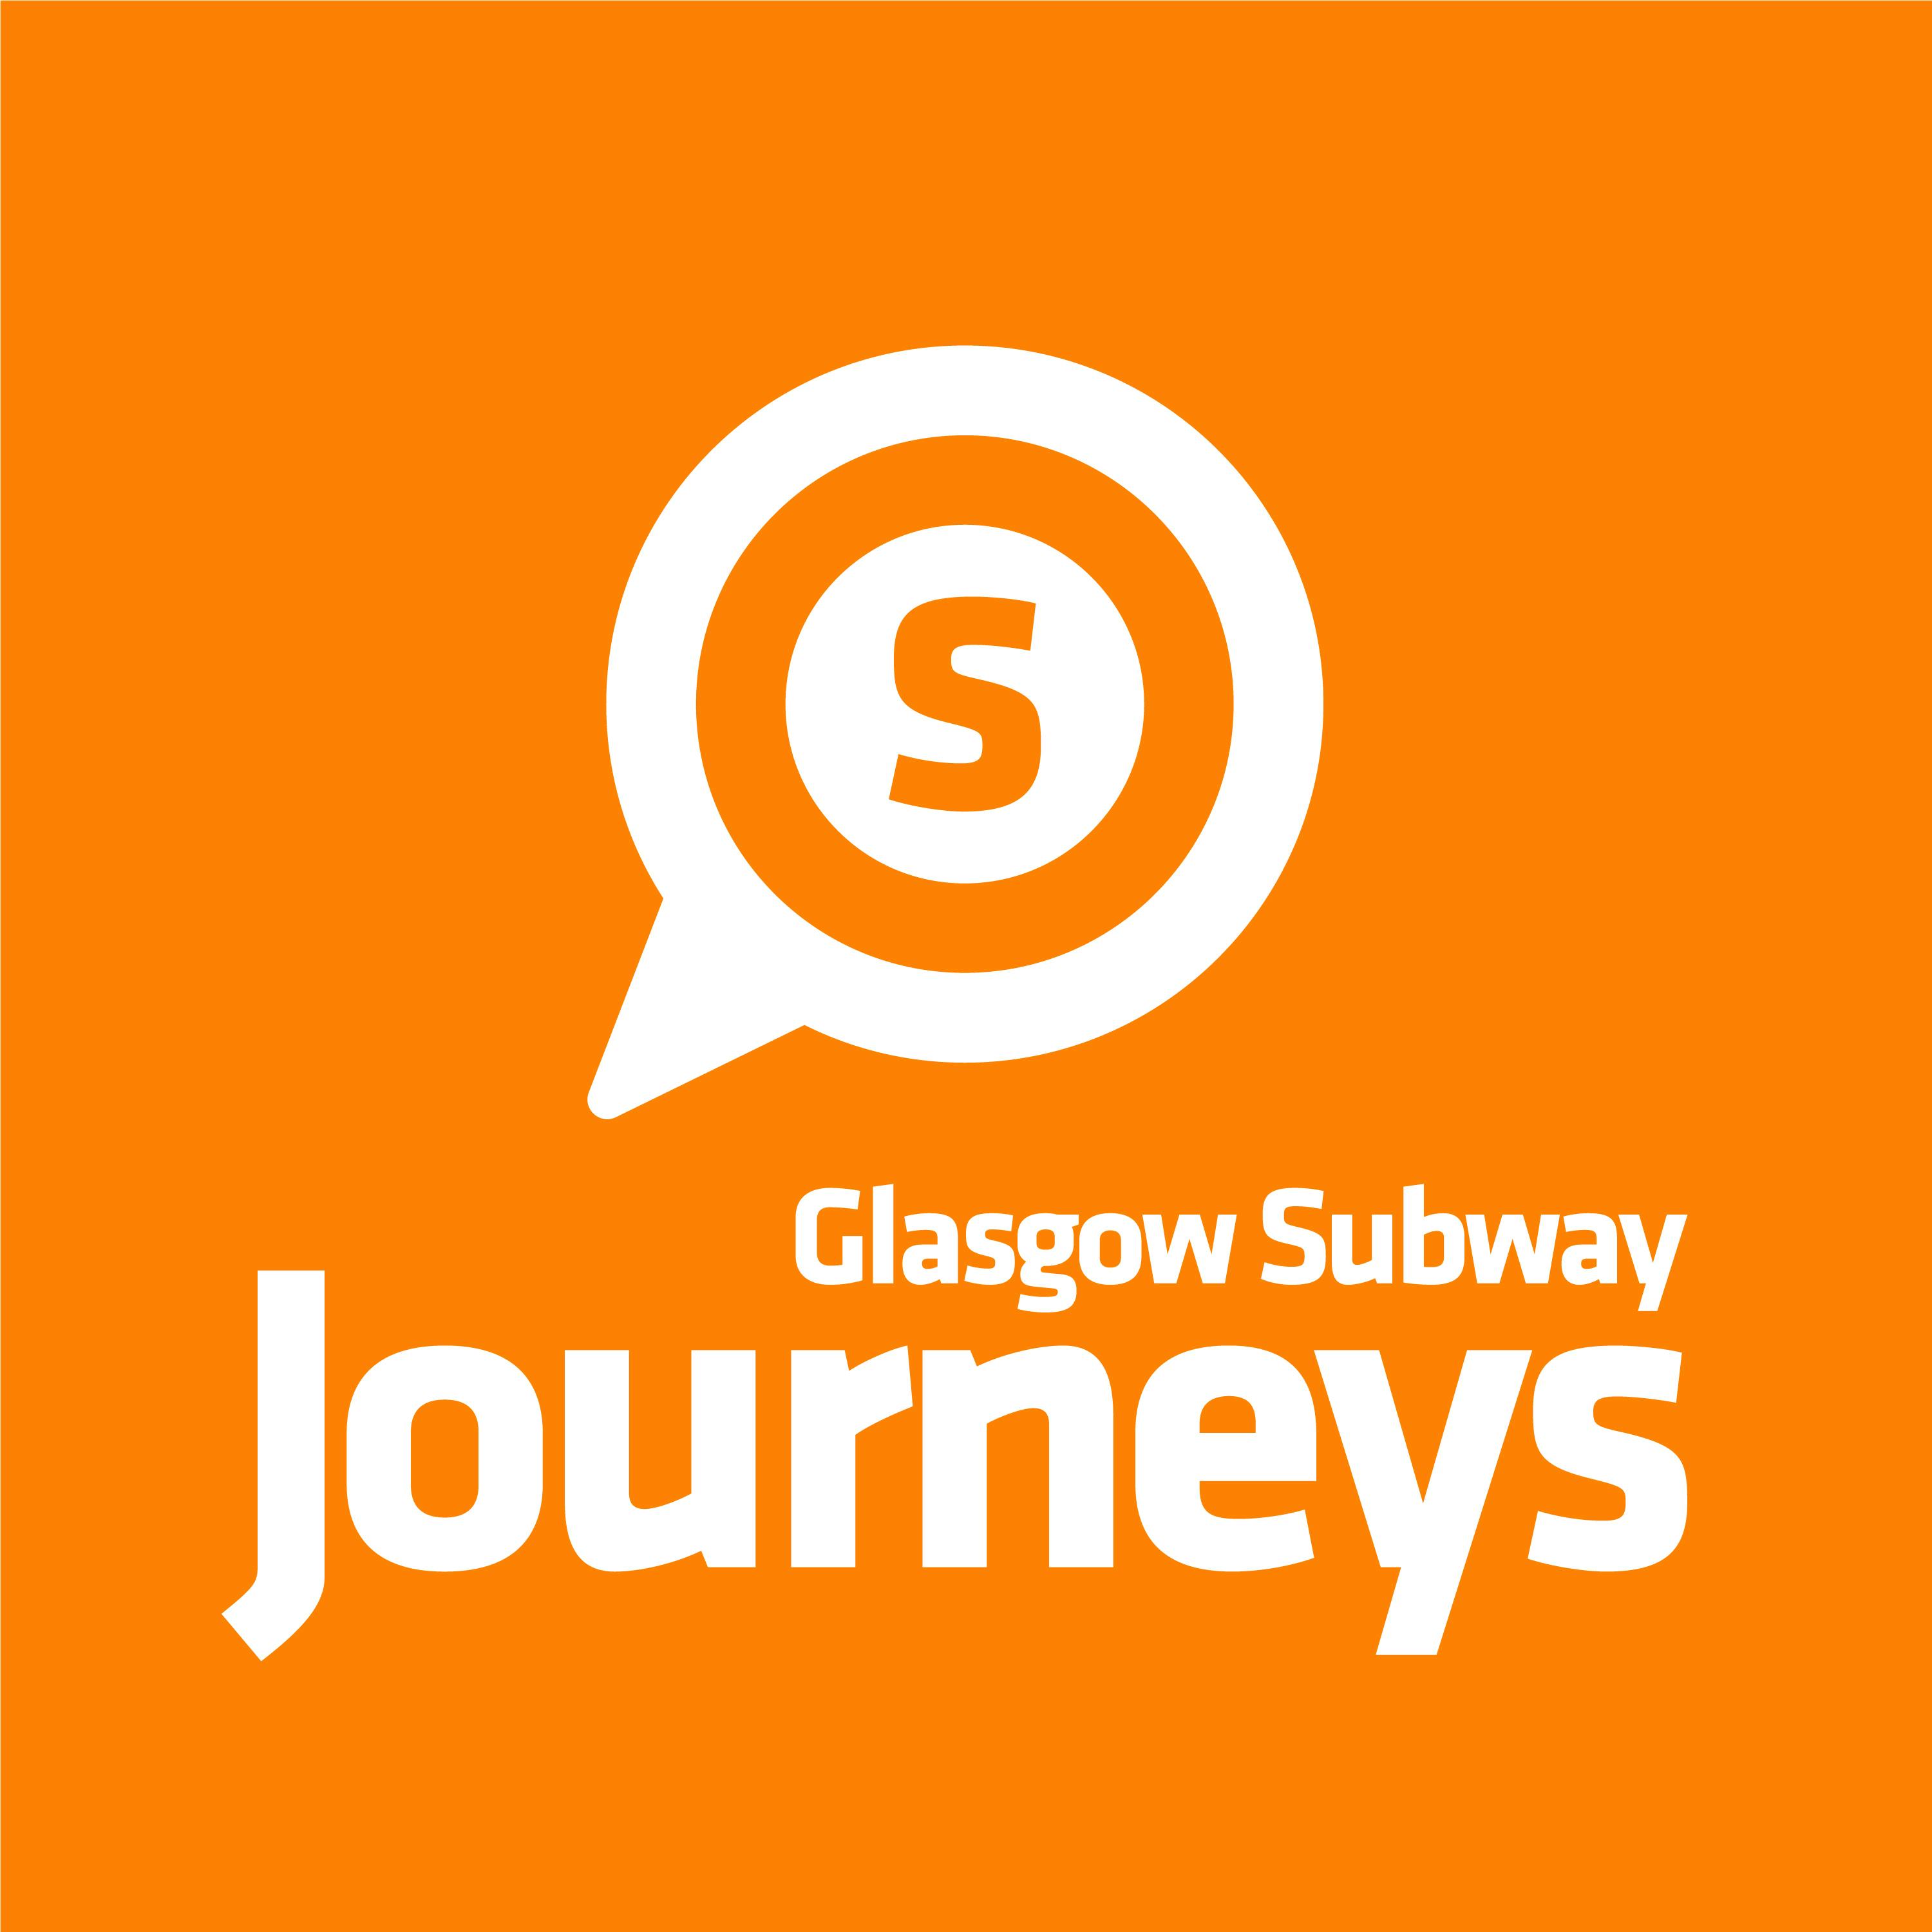 Glasgow Subway’s Future: Celebrating 125 Years